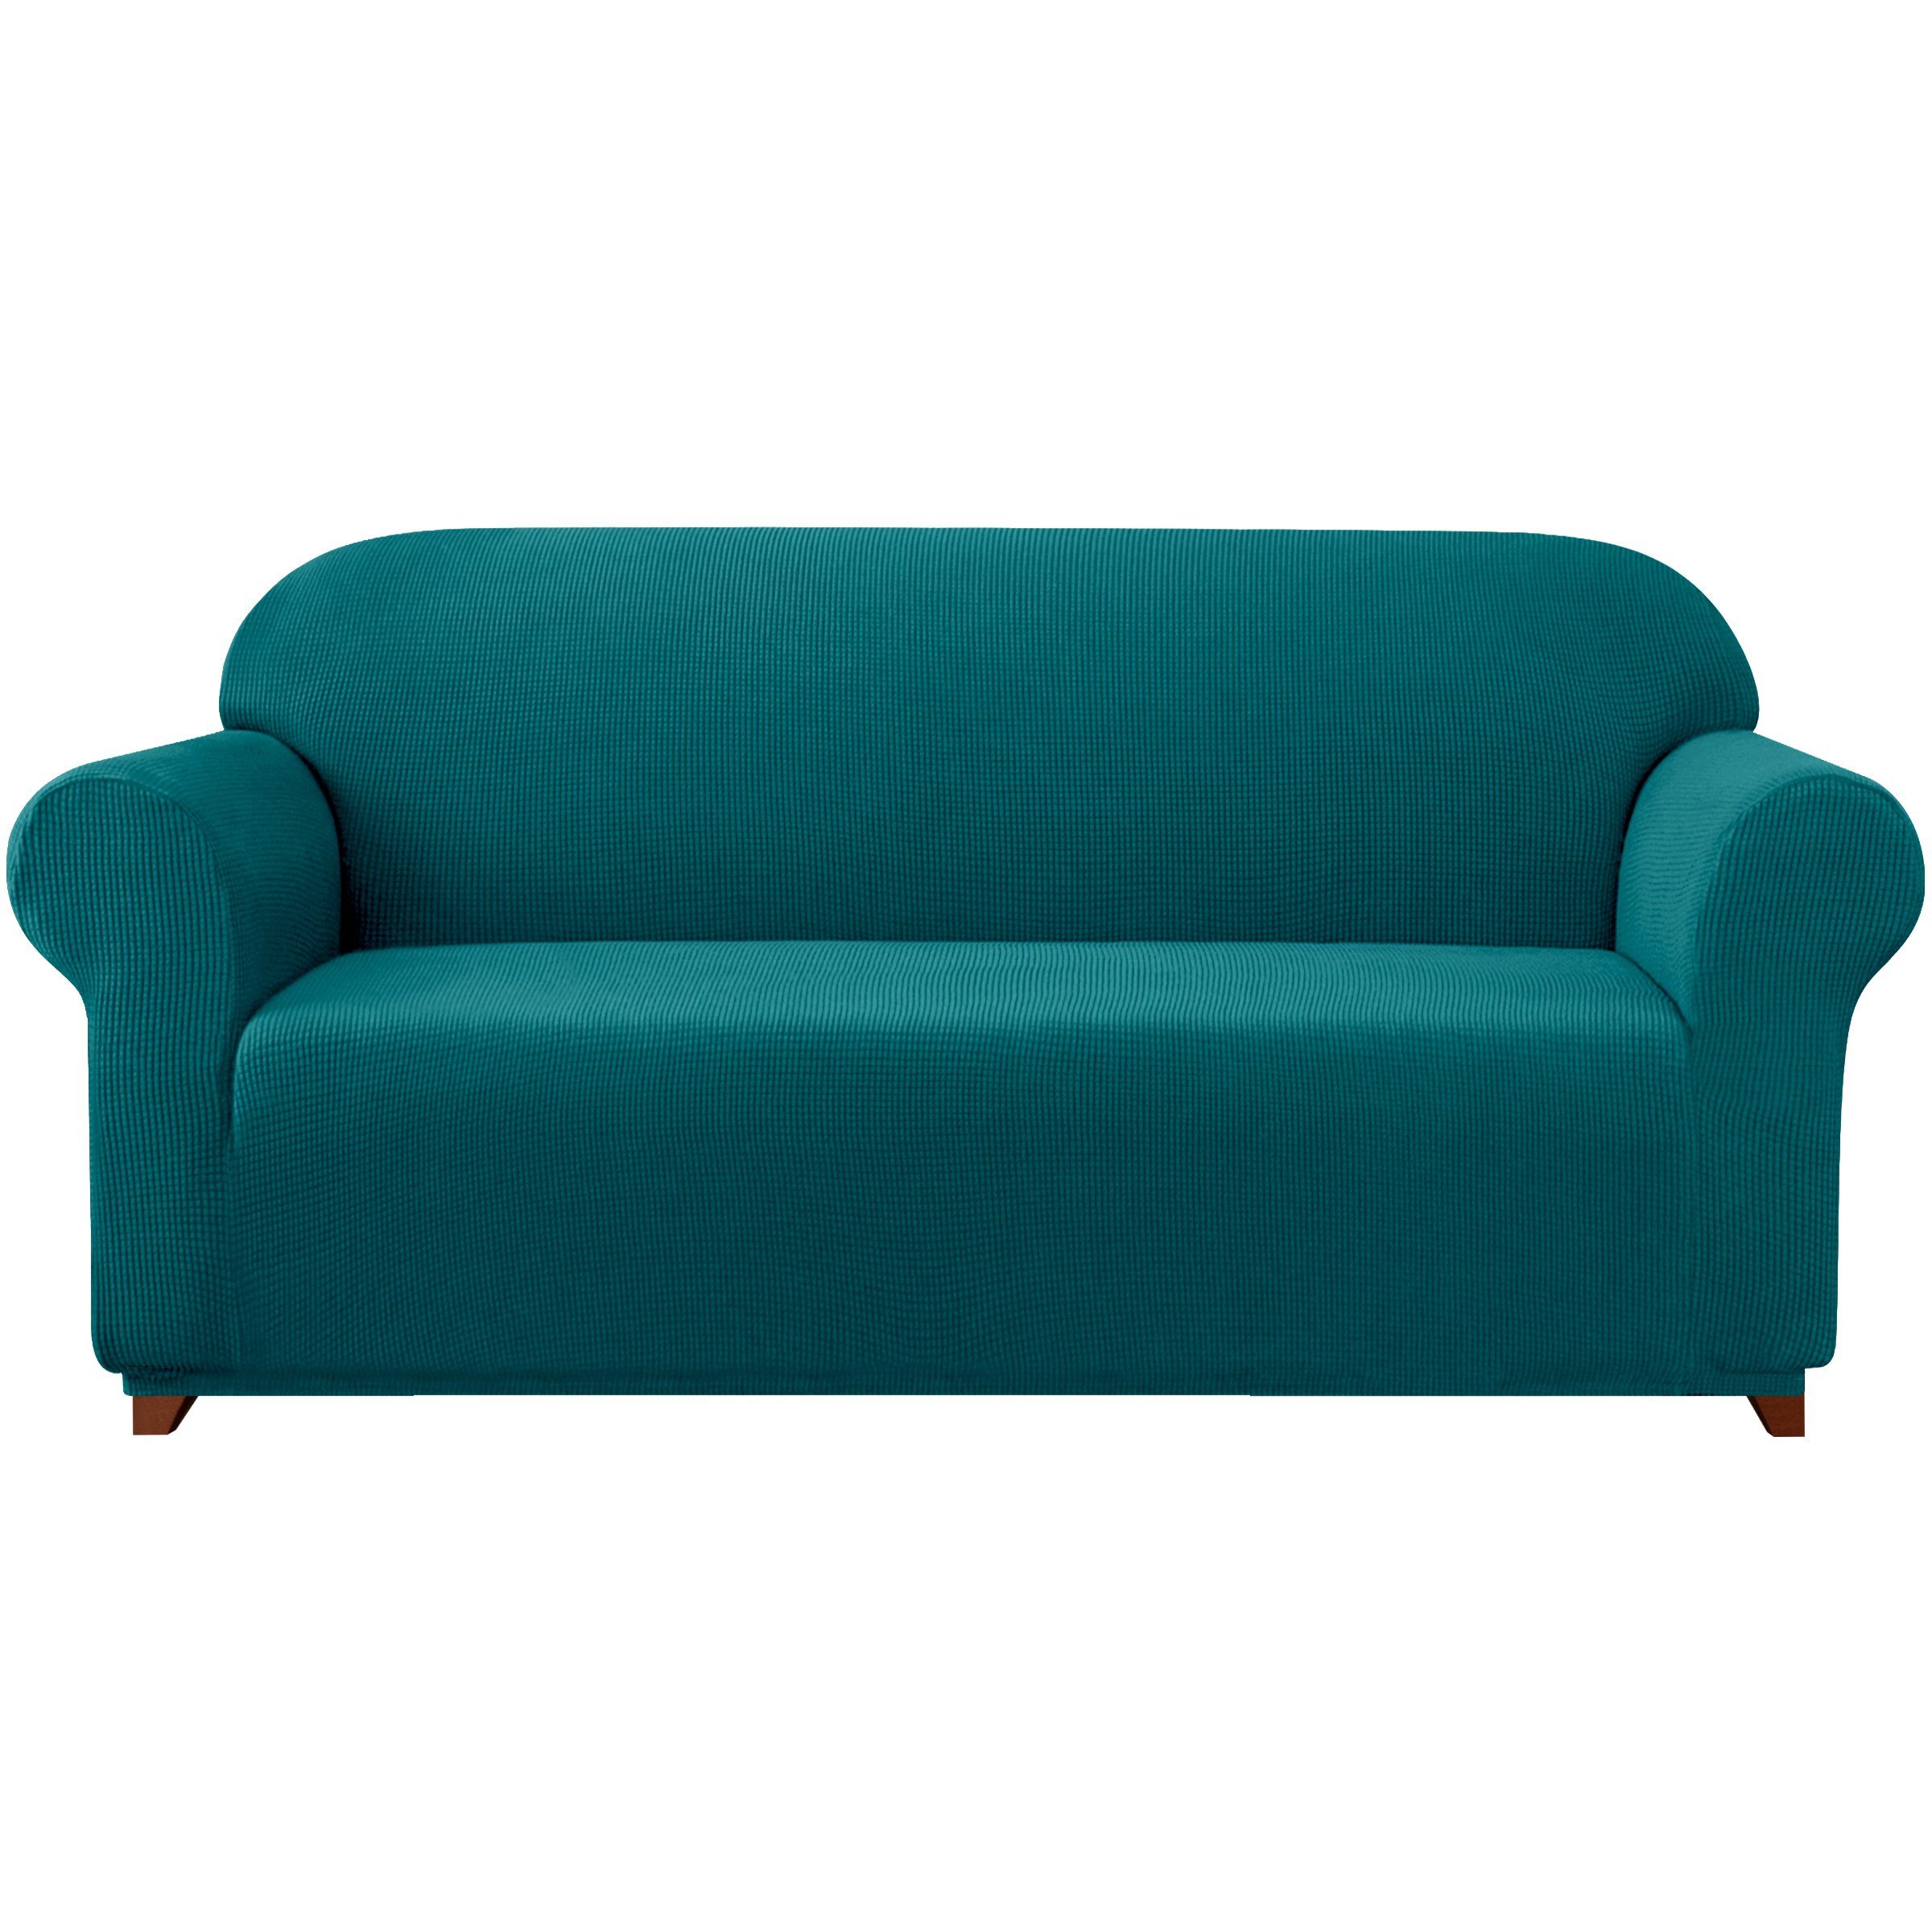 Sofahusse 2/3/4 Sitzer mit SUBRTEX, dezentem Muster Sofabezug, Blaugrün